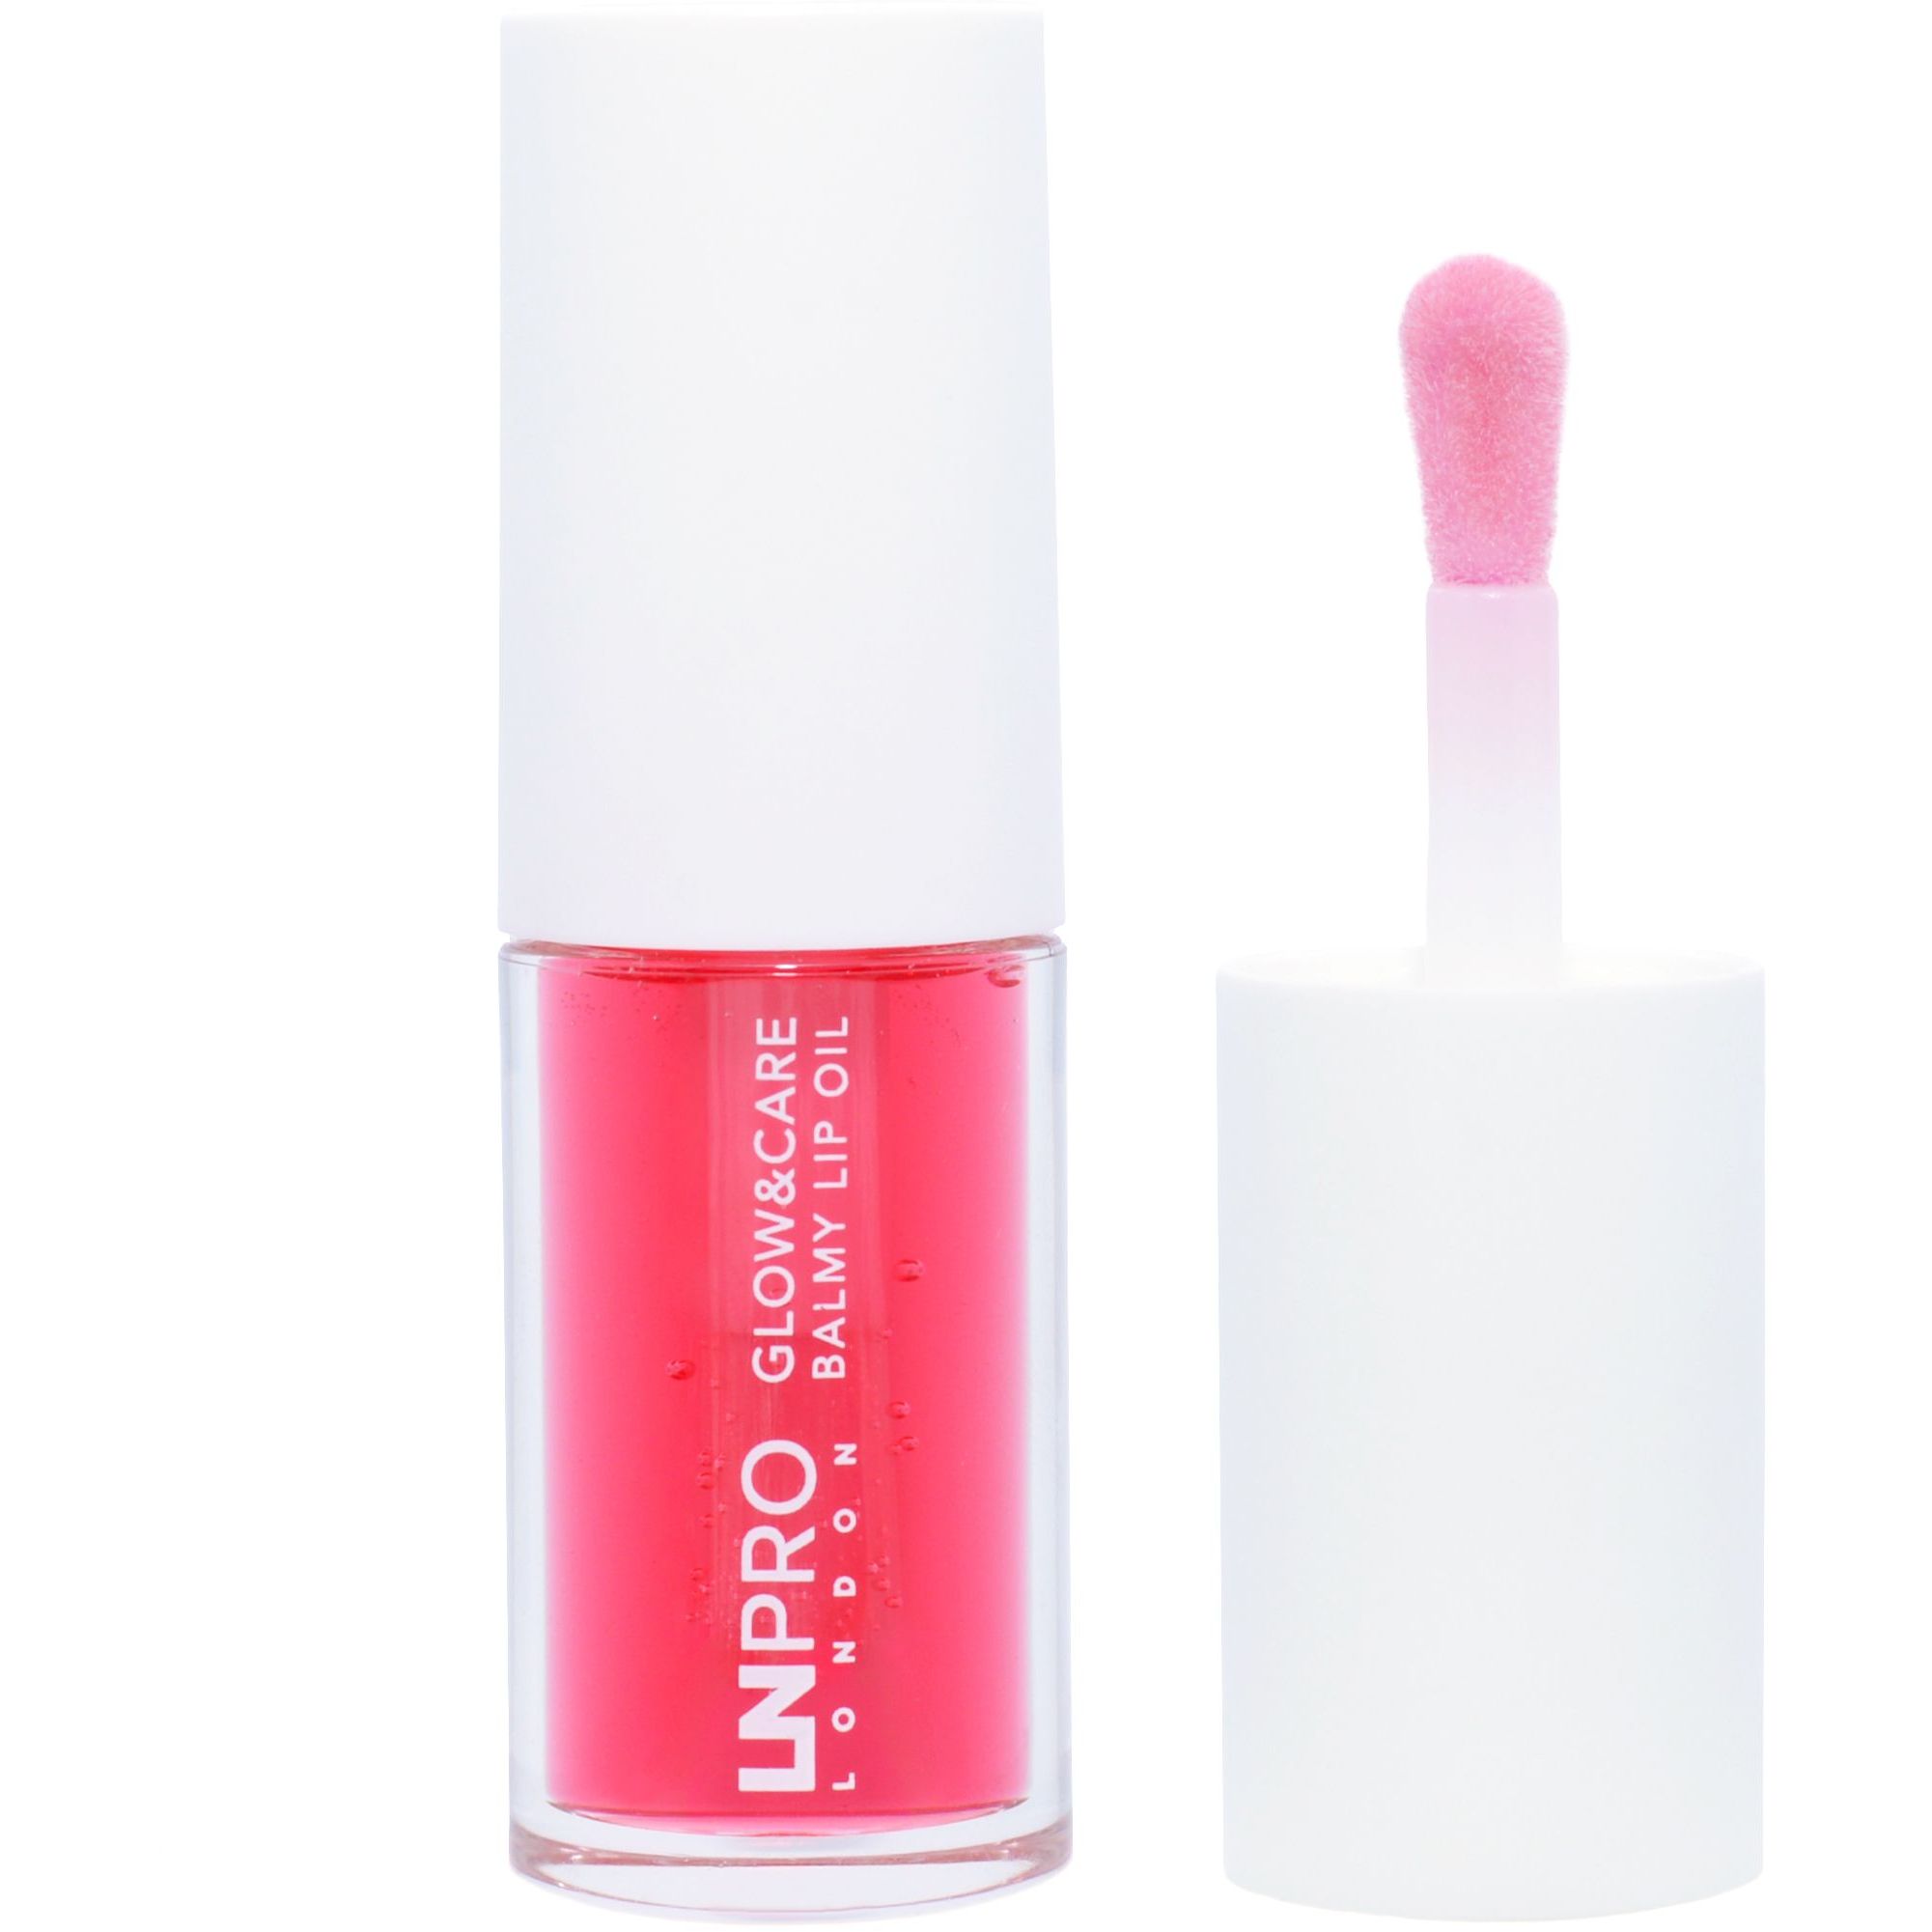 Олія-бальзам для губ LN Pro Glow & Care Balmy Lip Oil відтінок 101, 3.7 мл - фото 1